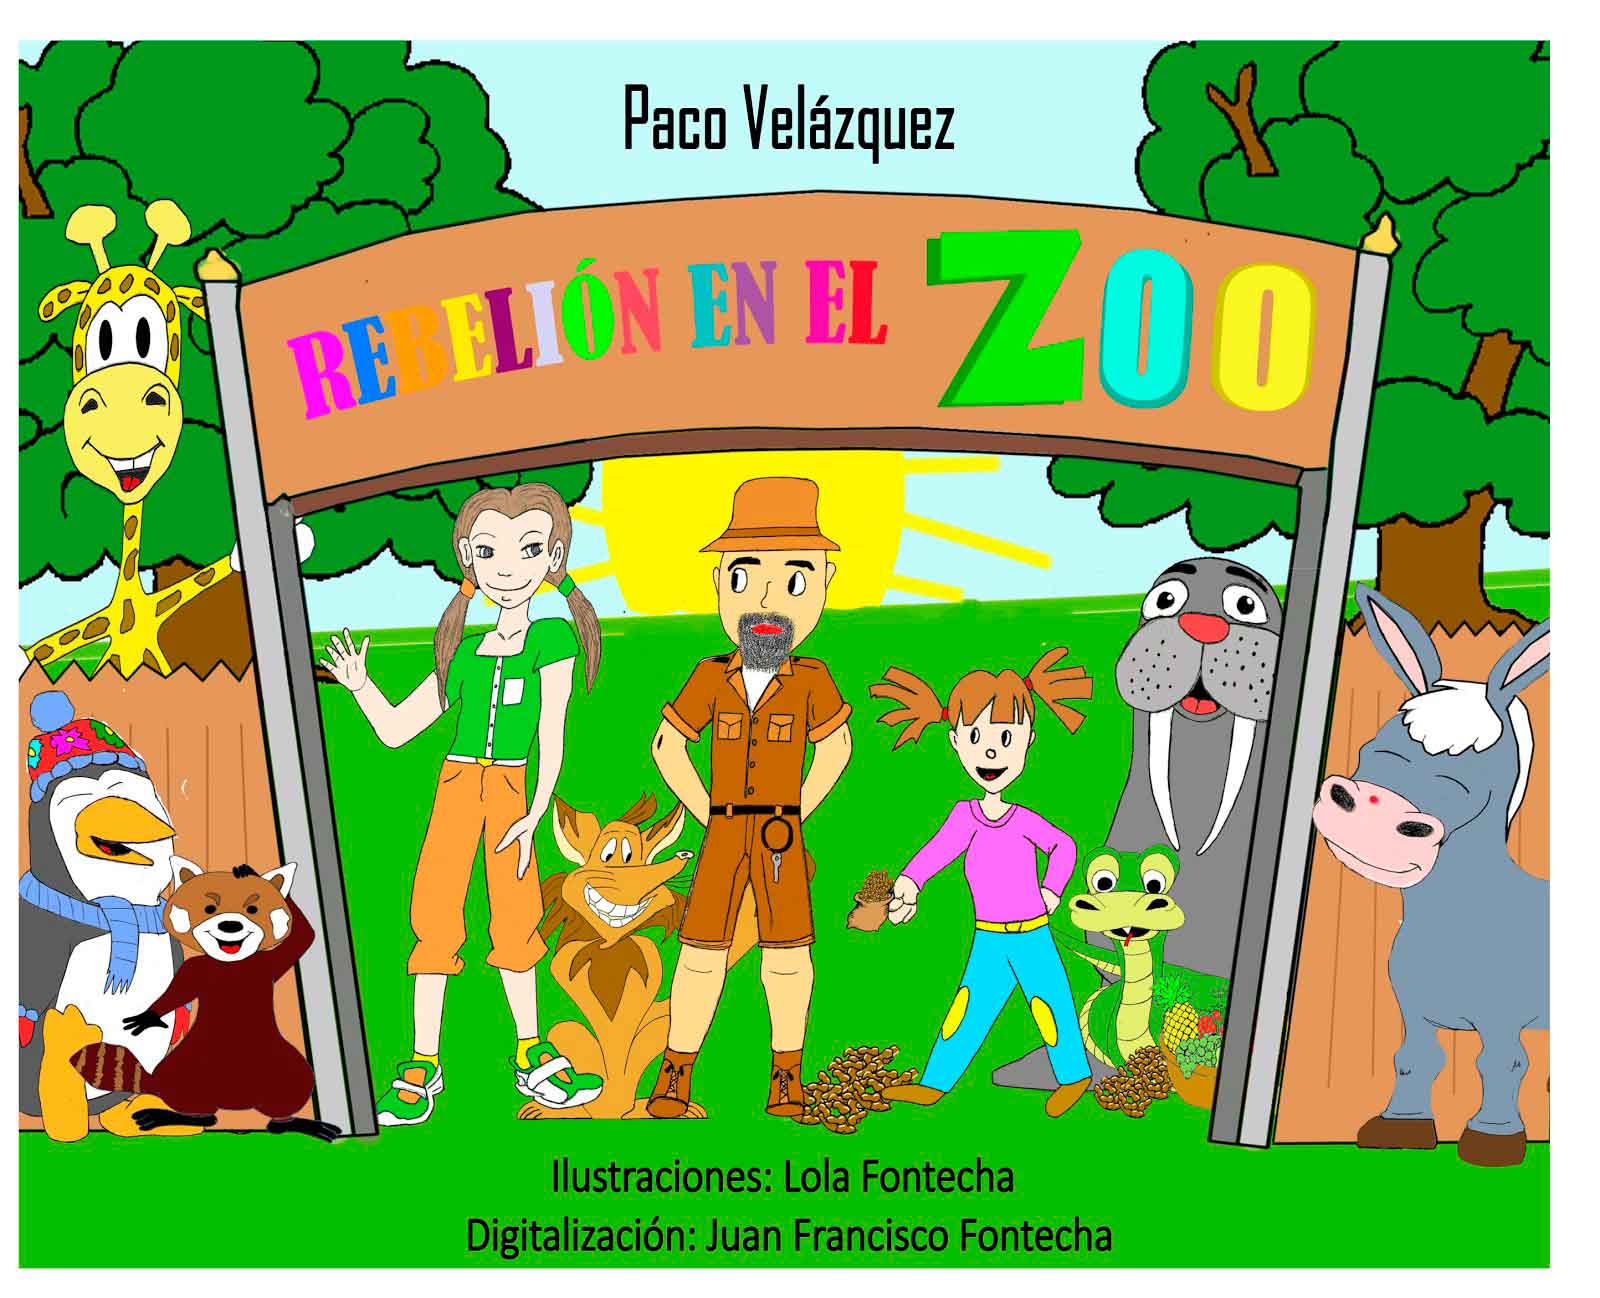 Portada del libro 'Rebelión en el zoo' de Paco Velázquez